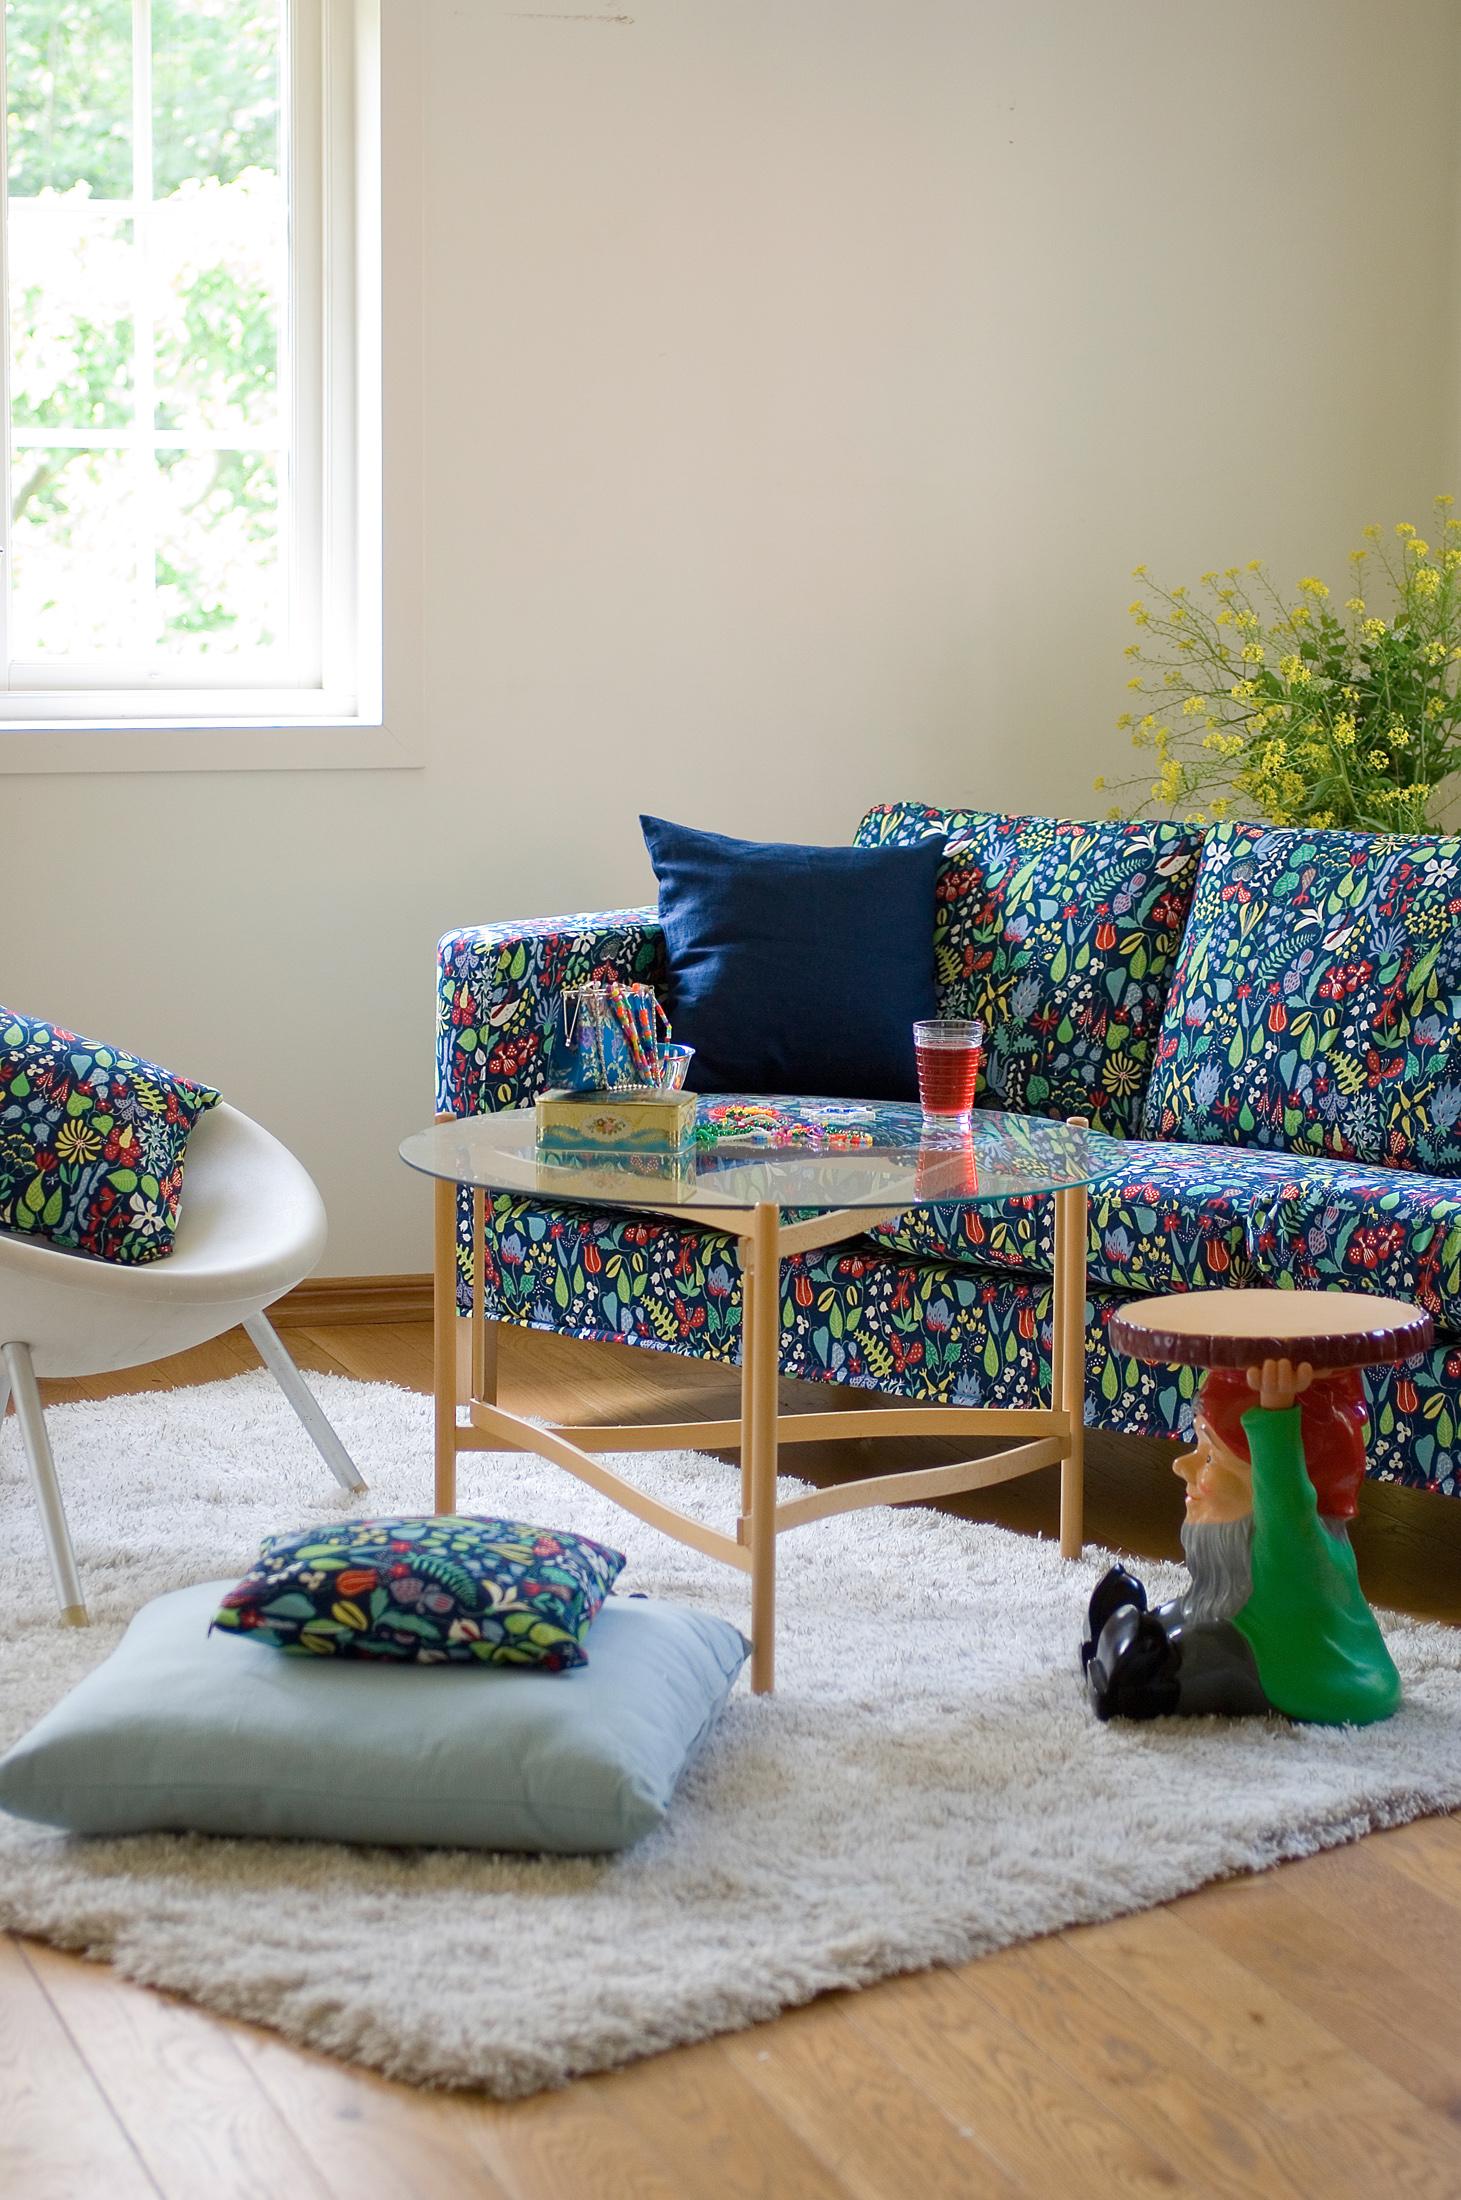 Stoffsofa und Kissen mit Pflanzen-Muster #beistelltisch #ikea #sofa #blauessofa ©Bemz